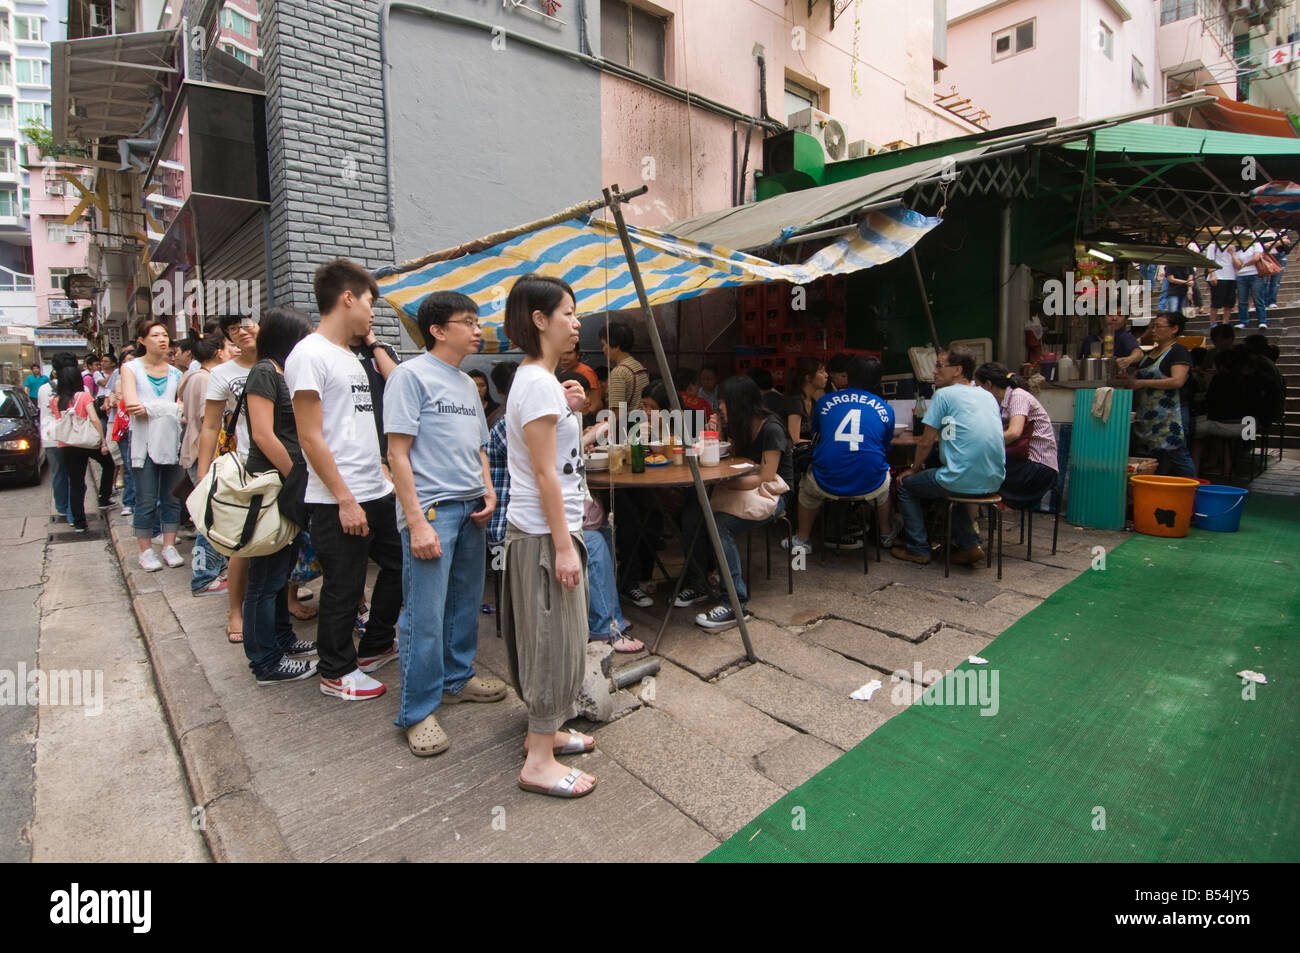 "La foule s'alignent pour un délicieux repas dans un célèbre Dai Pai Dong à Hong Kong" Banque D'Images